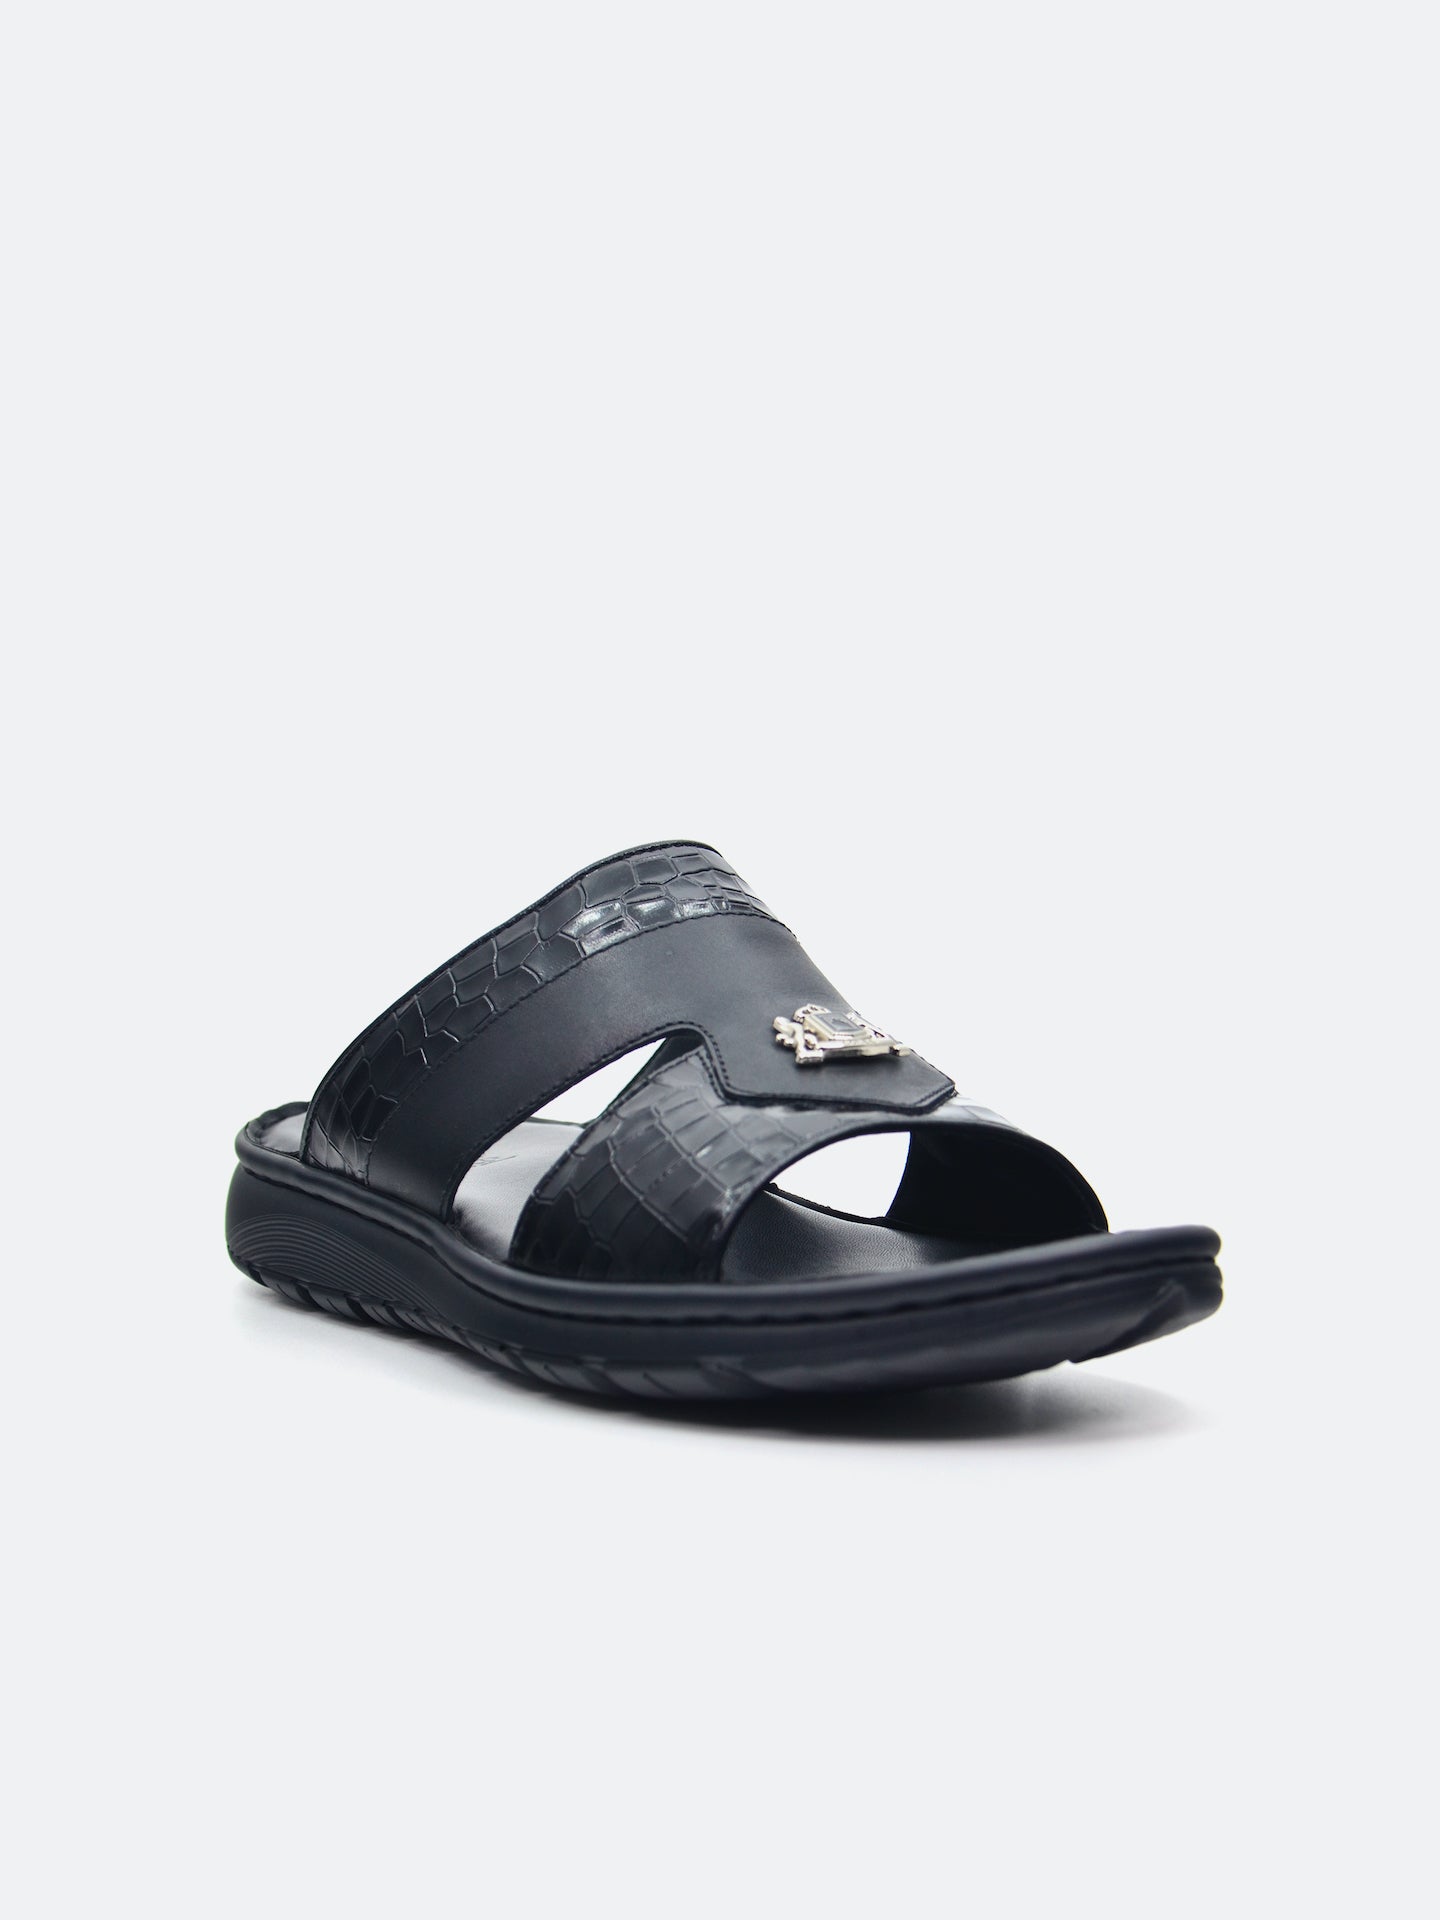 Barjeel Uno 29550-3 Men's Arabic Sandals #color_Black